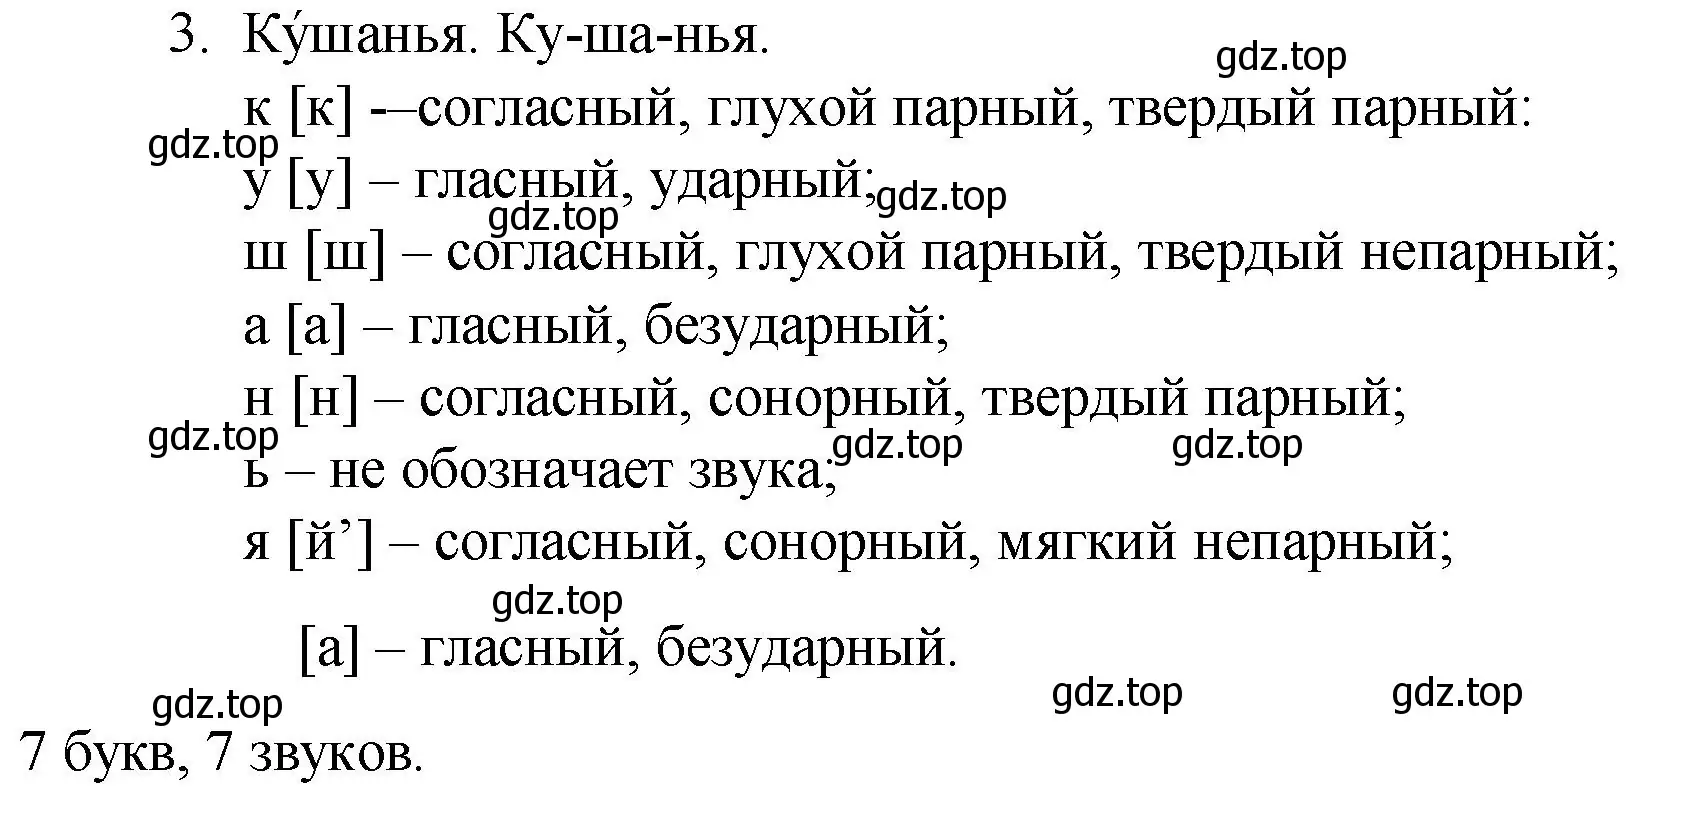 Решение номер 3 (страница 346) гдз по русскому языку 10-11 класс Гольцова, Шамшин, учебник 1 часть